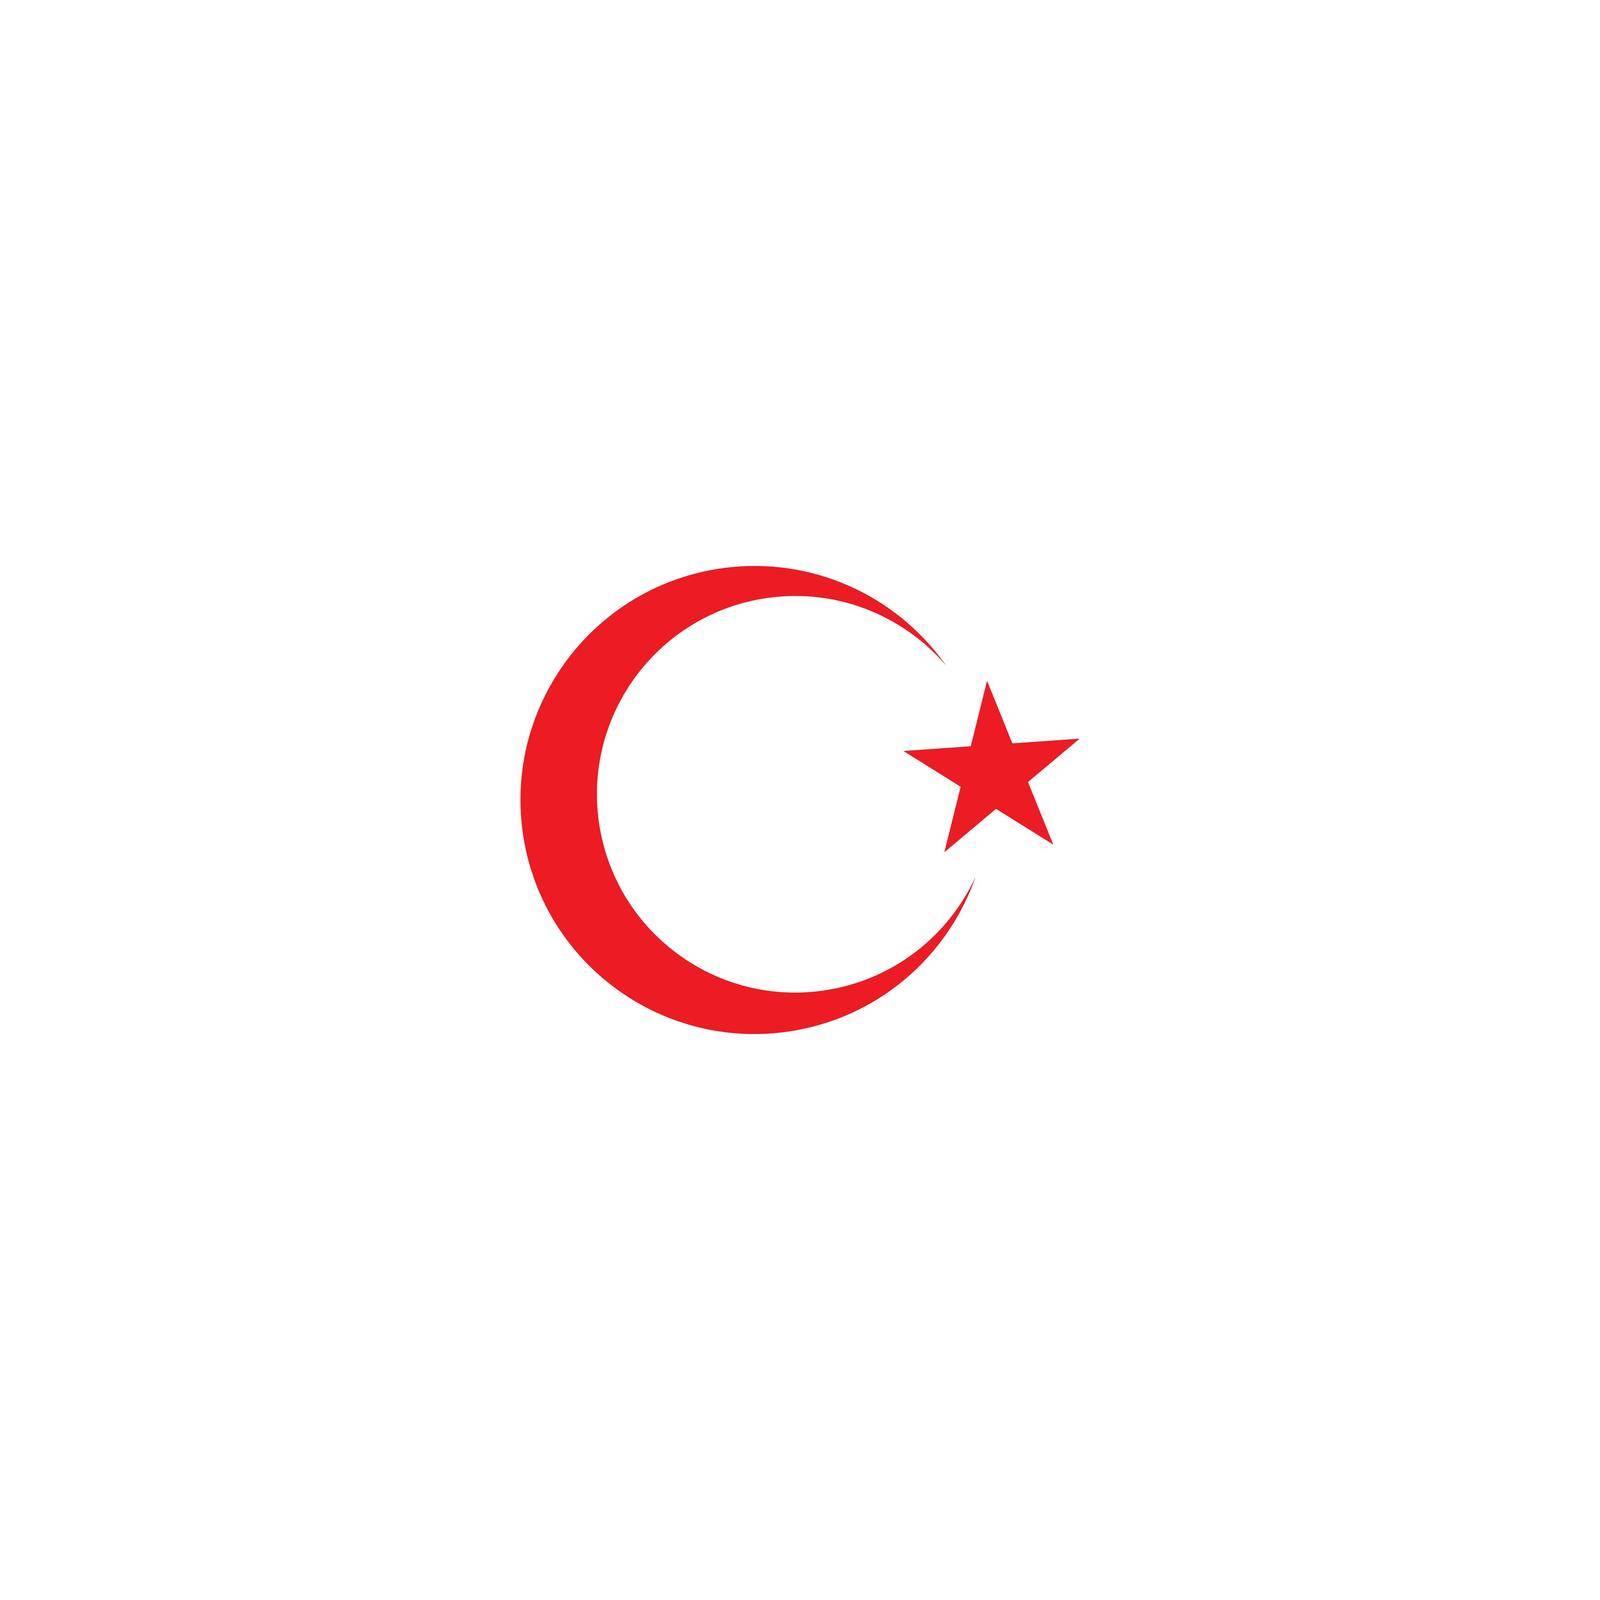 Turkey flag by awk